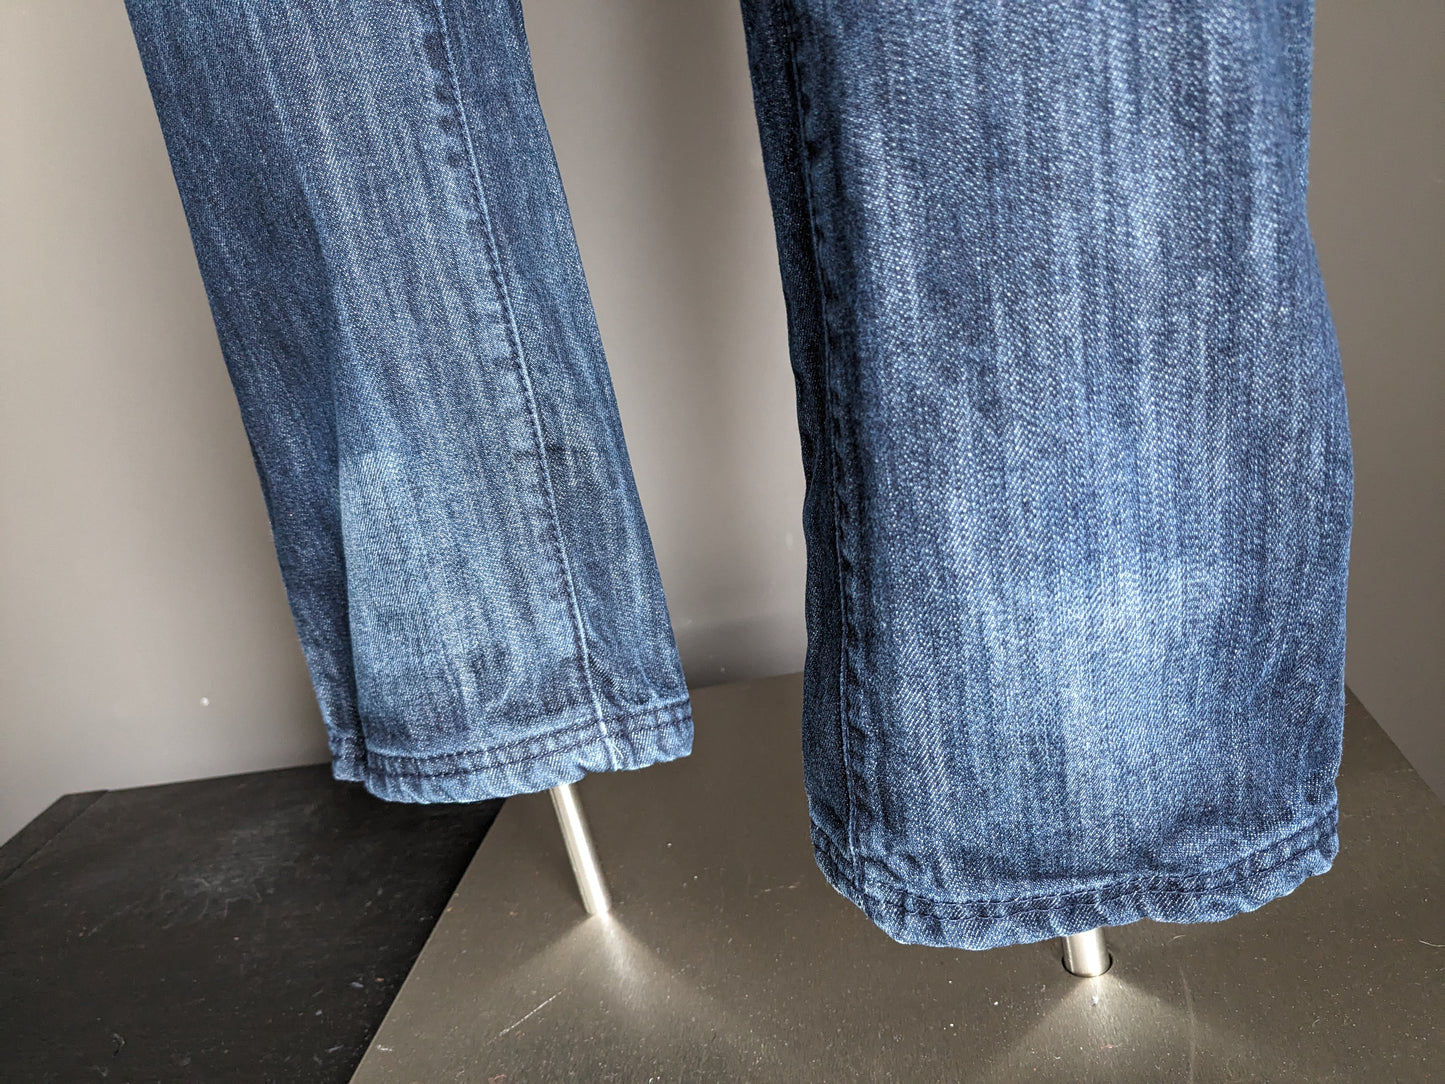 Jeans fabriqués. Couleur bleu foncé. Taille W32 - L34.